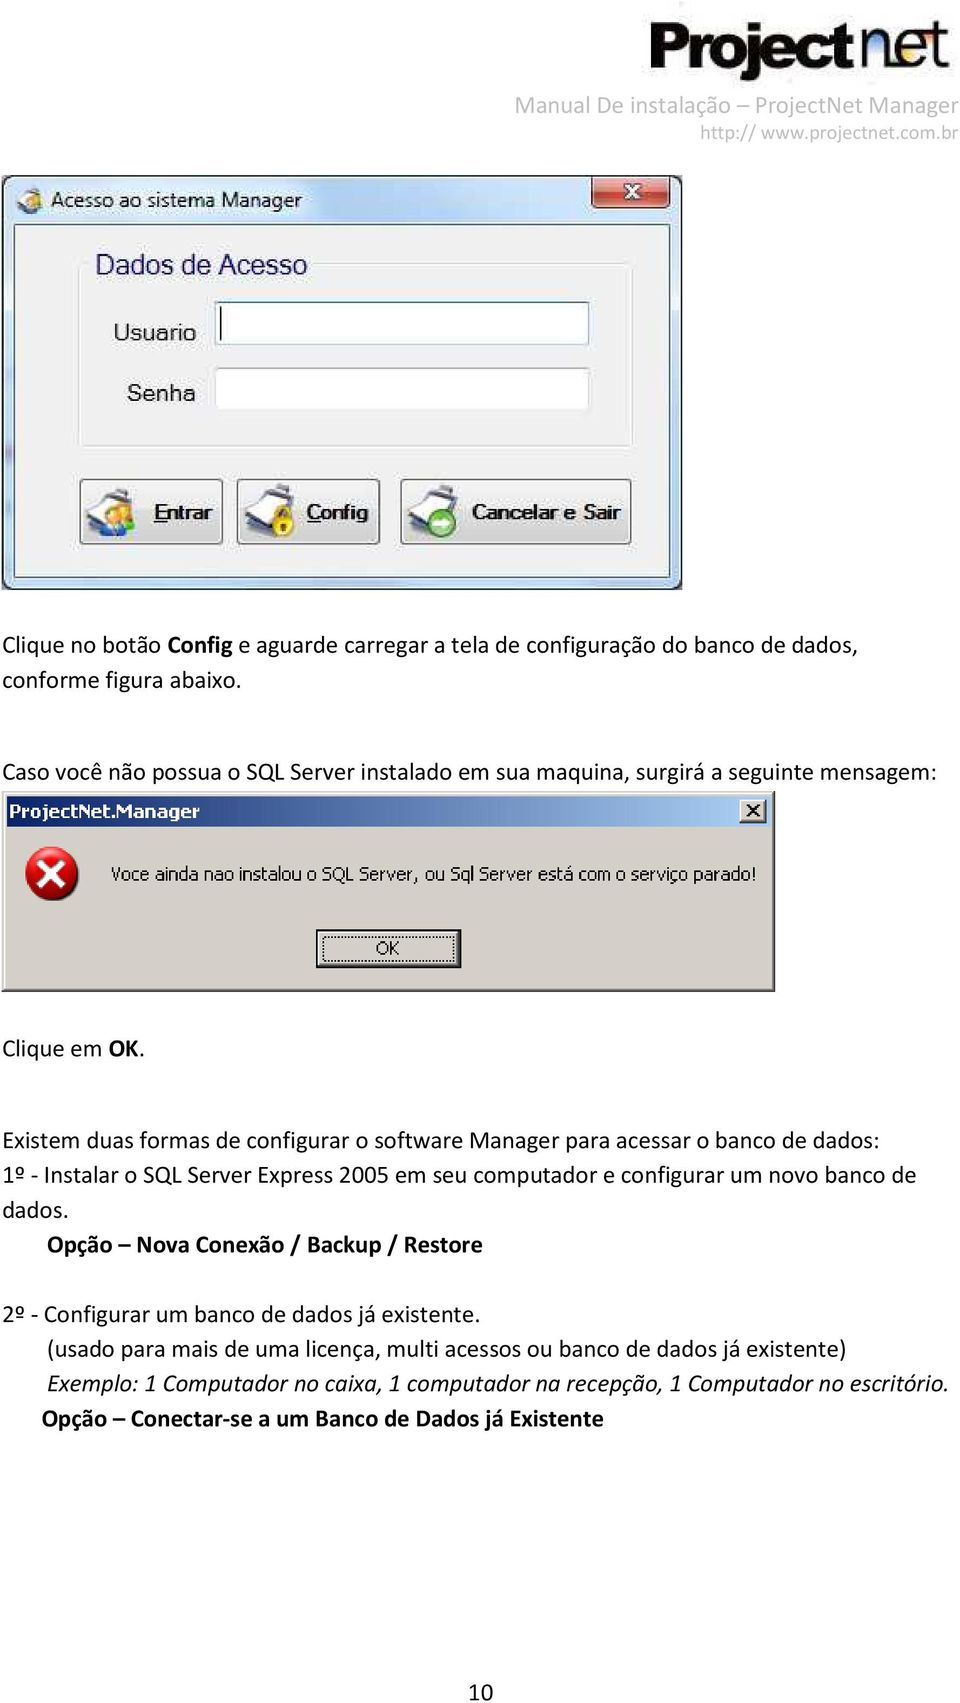 Existem duas formas de configurar o software Manager para acessar o banco de dados: 1º - Instalar o SQL Server Express 2005 em seu computador e configurar um novo banco de